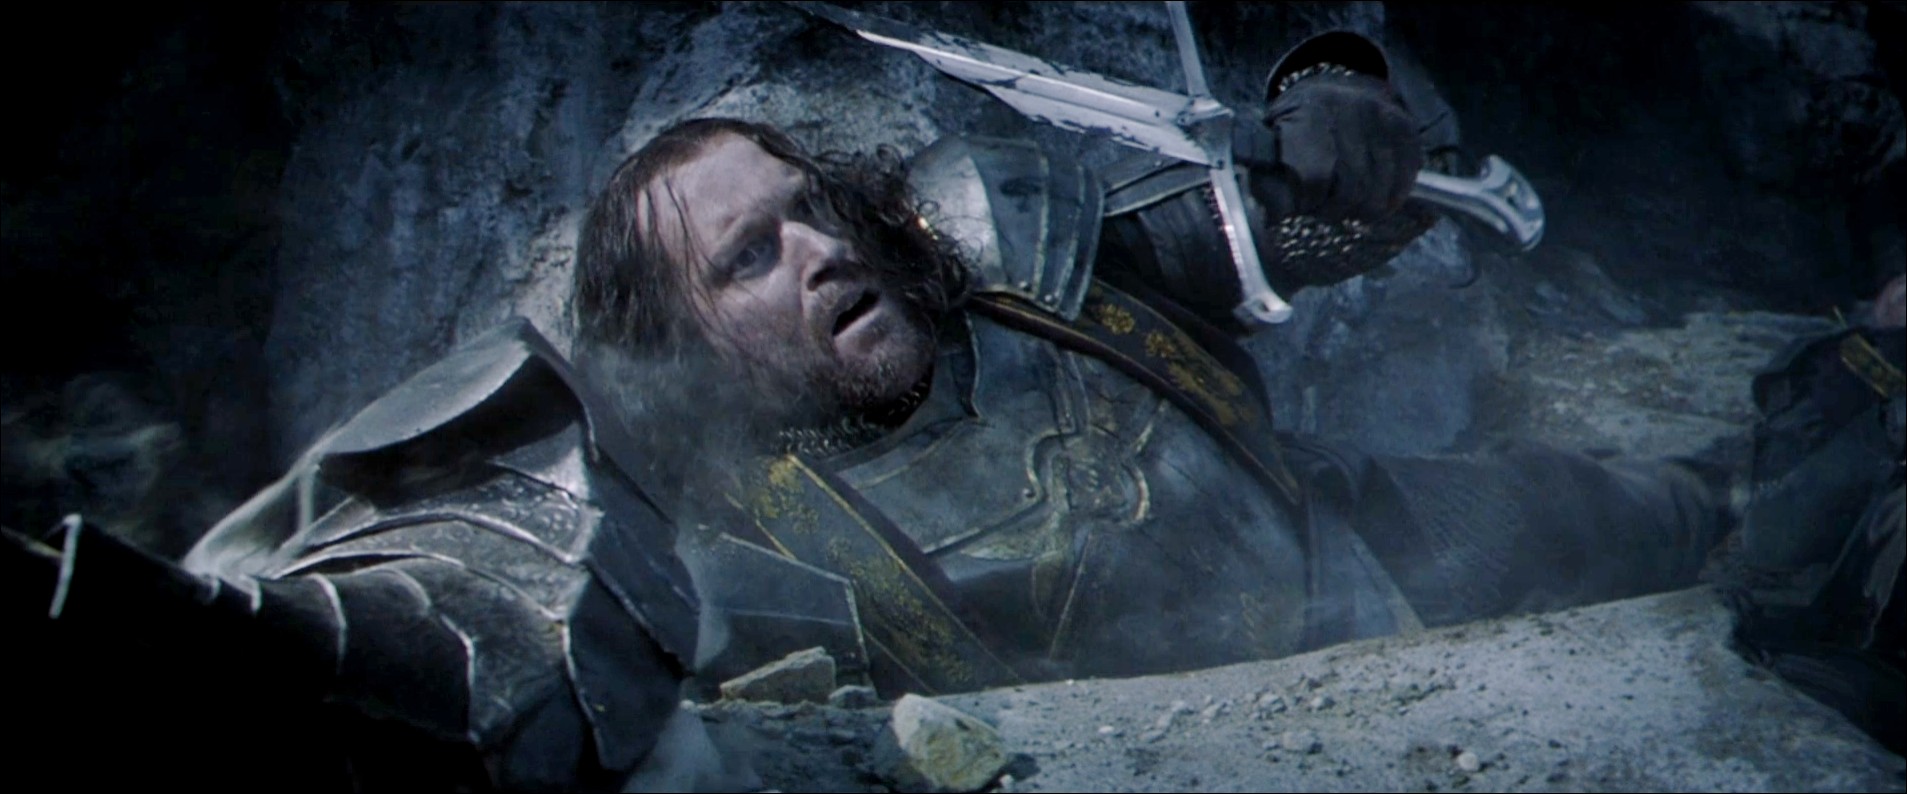 Isildur tenant Narsil dans le film La Communauté de l'Anneau de Peter Jackson